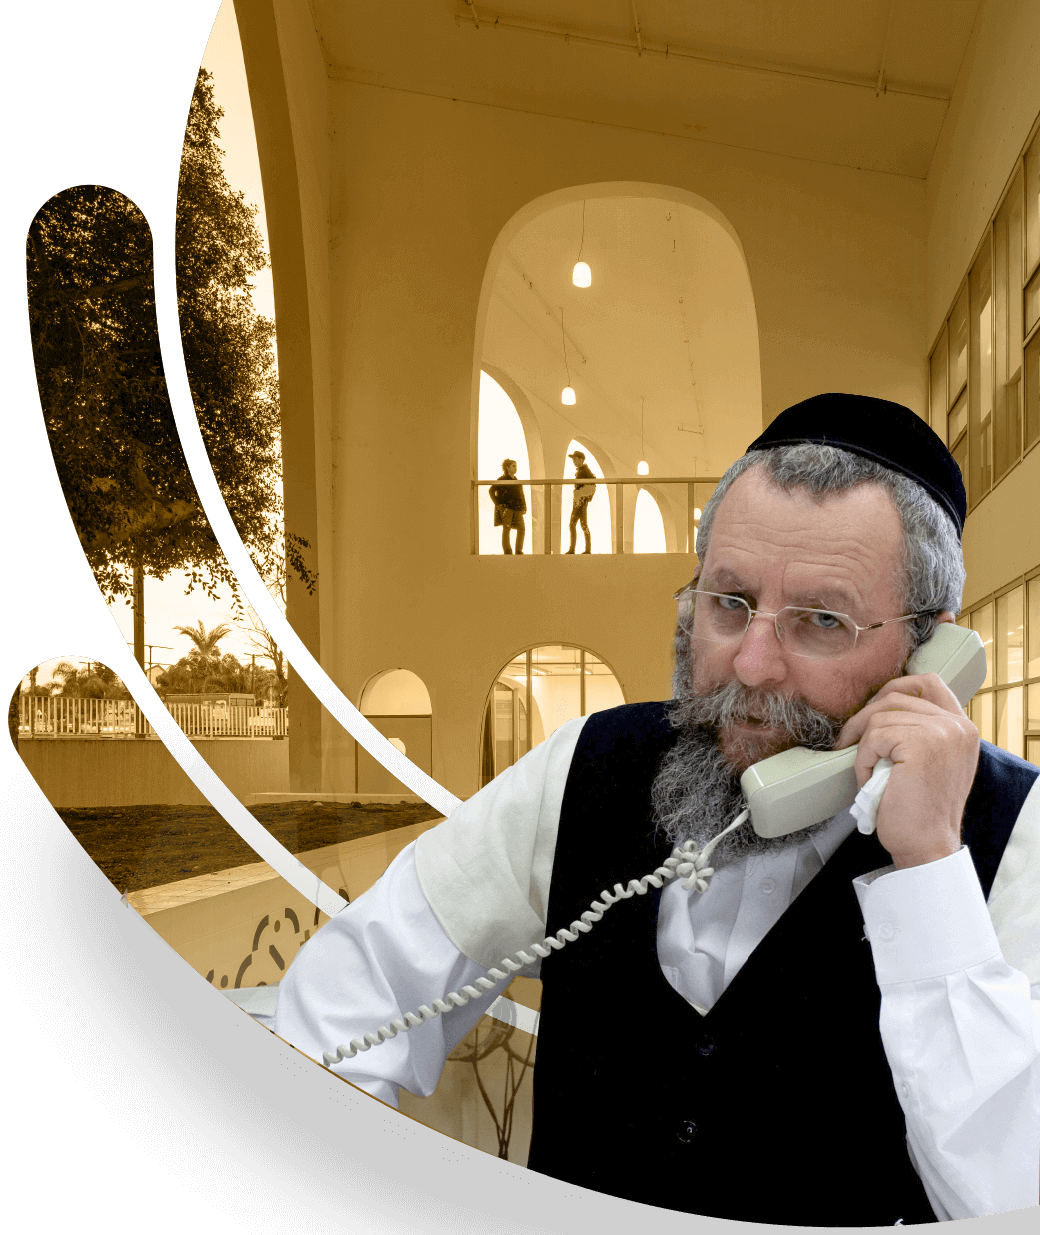 הרב אלימלך פירר מדבר בטלפון עזרה למרפא